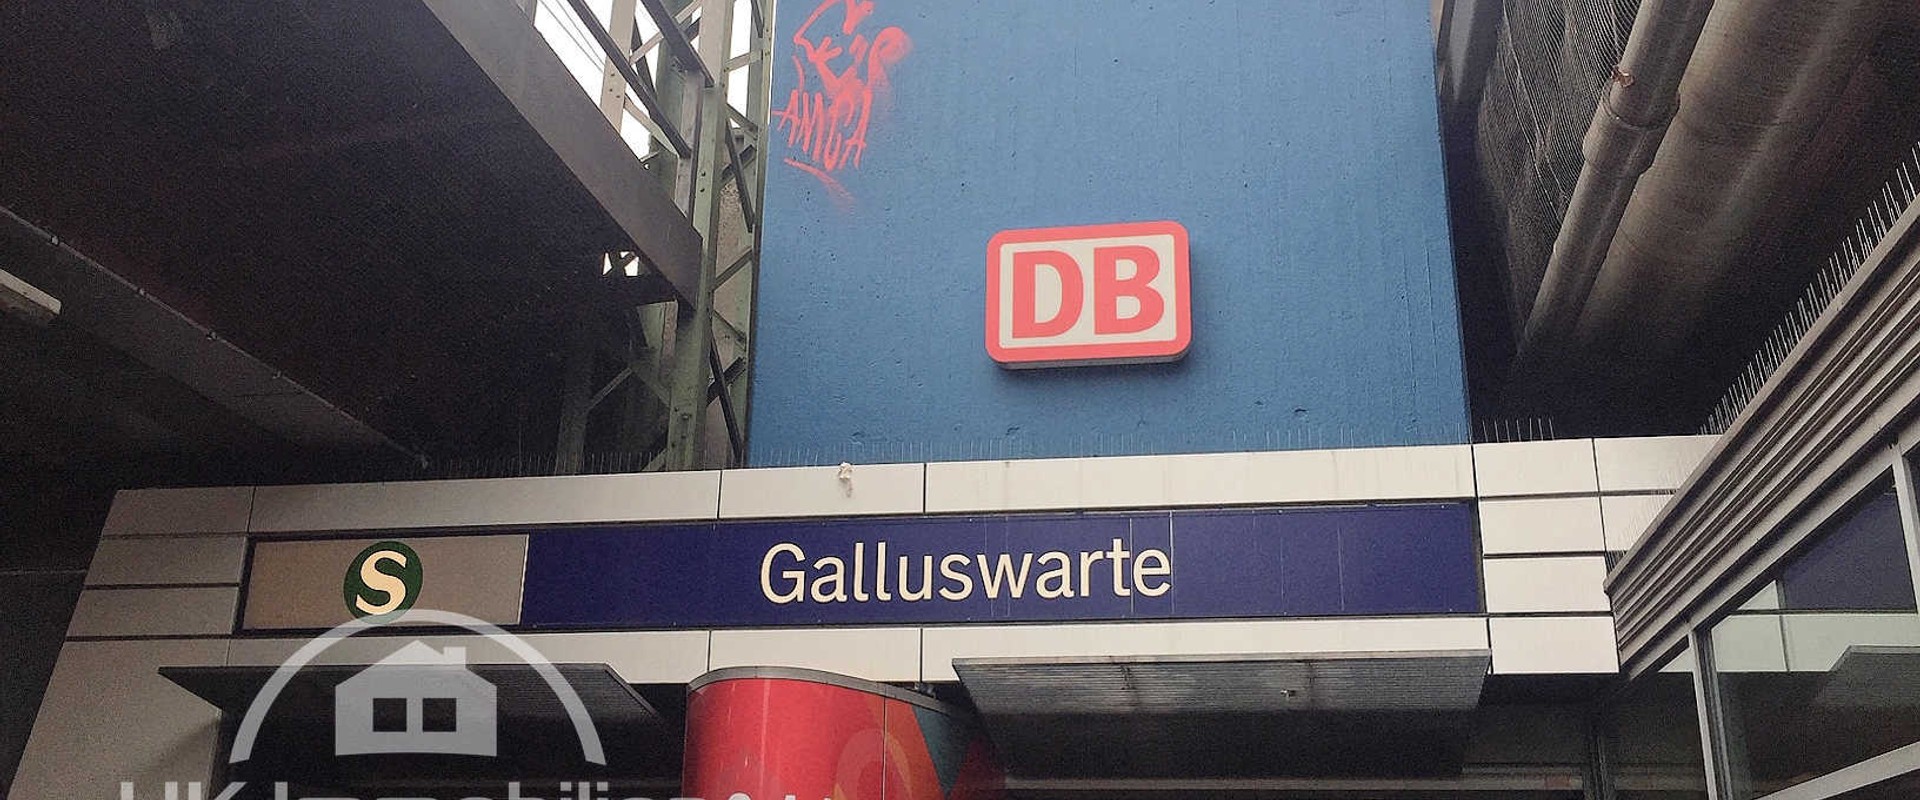 Immobilienmakler-Frankfurt-Gallus-SBahn-Haltestelle-Galluswarte.jpg